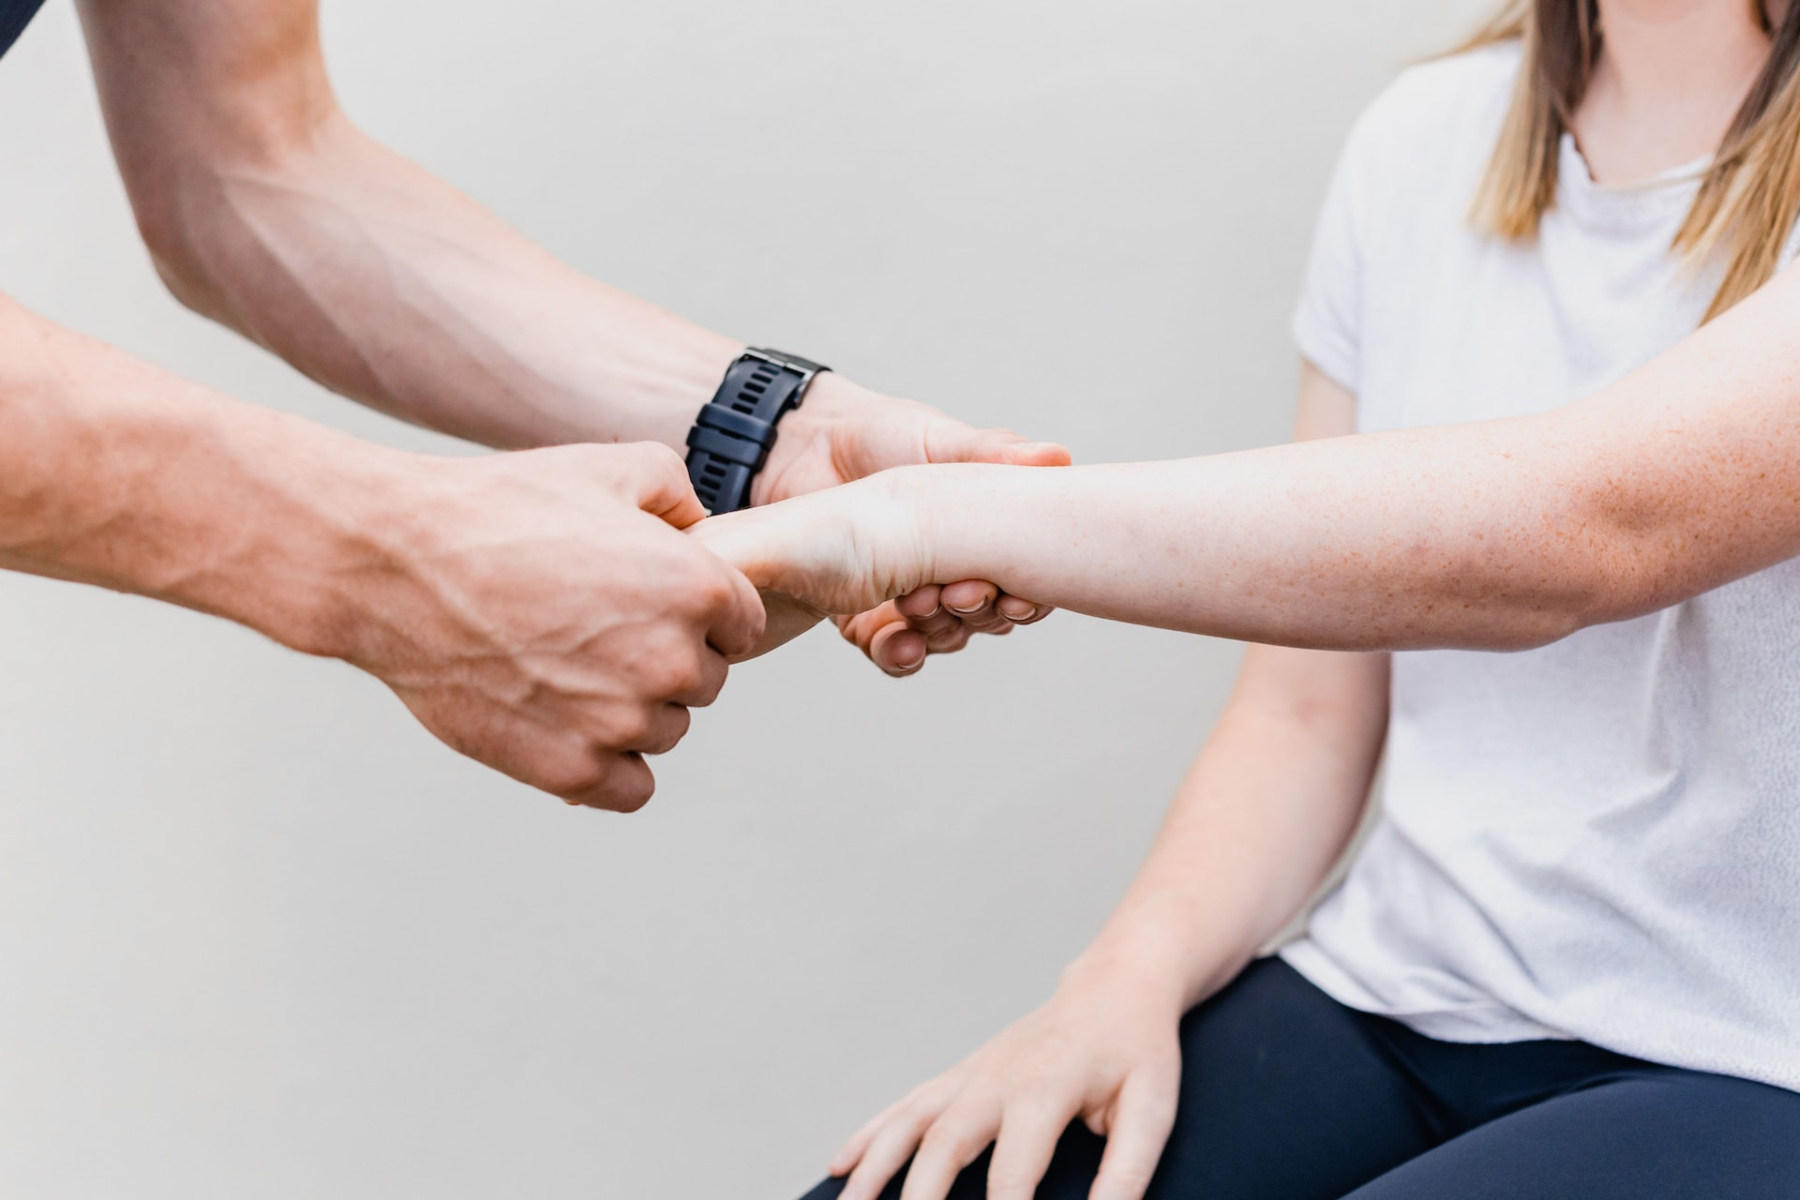 Χειροπρακτική φροντίδα: Μπορεί η χειροπρακτική να βοηθήσει την απώλεια βάρους;